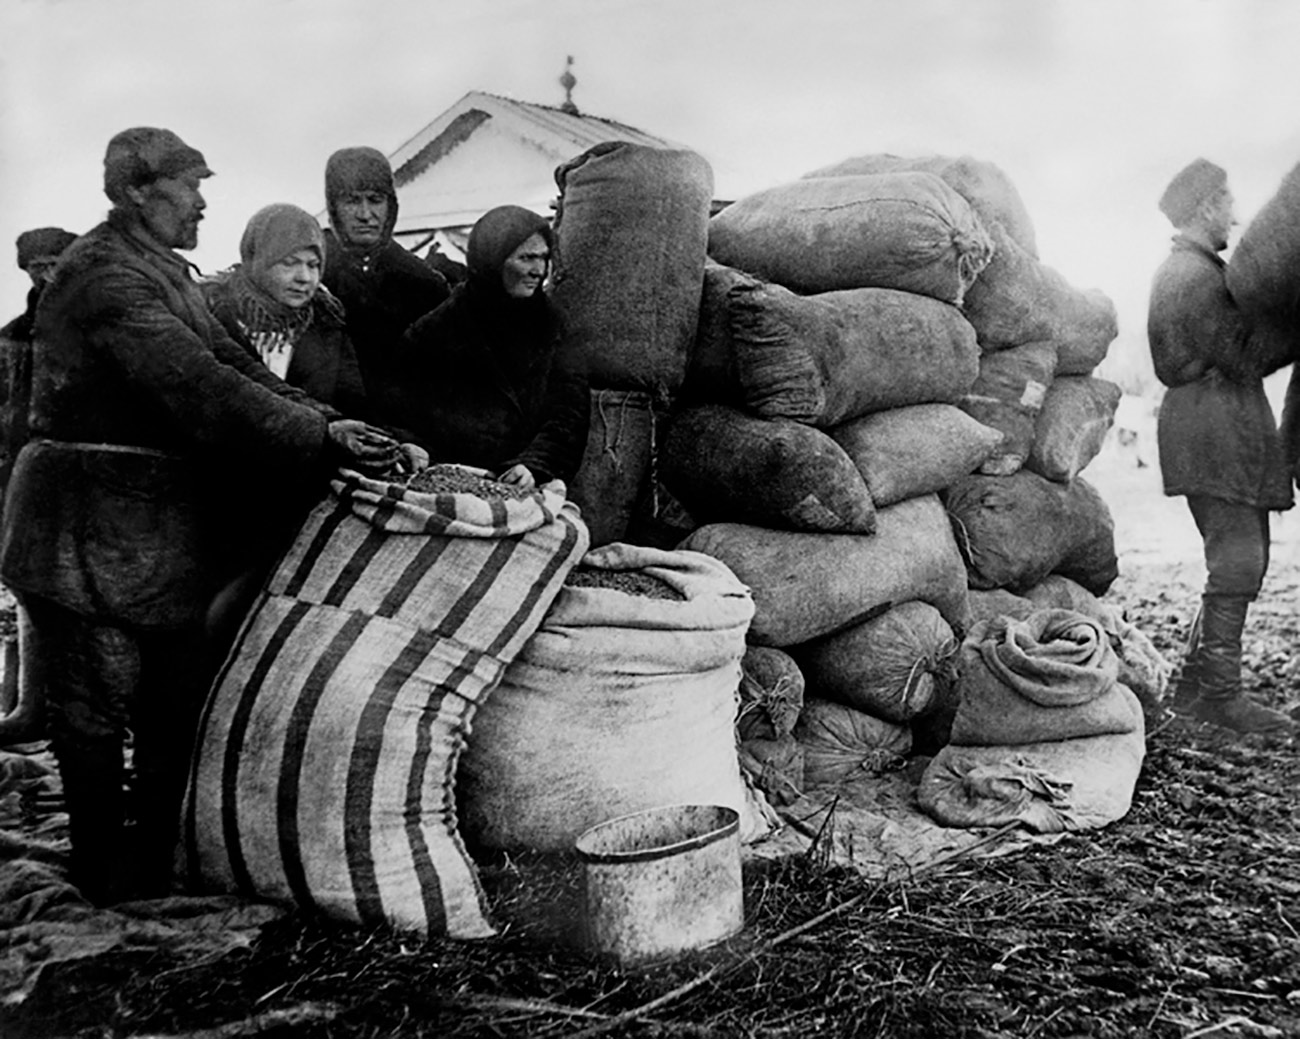 Колективизација је изазвала велике патње сељаштва. Присилно одузимање меса и хлеба довело је до бруталности међу сељацима. Многи су радије клали властиту стоку него је предавали колективним фармама. Понекад је совјетска влада војском сузбијала побуне сељака.